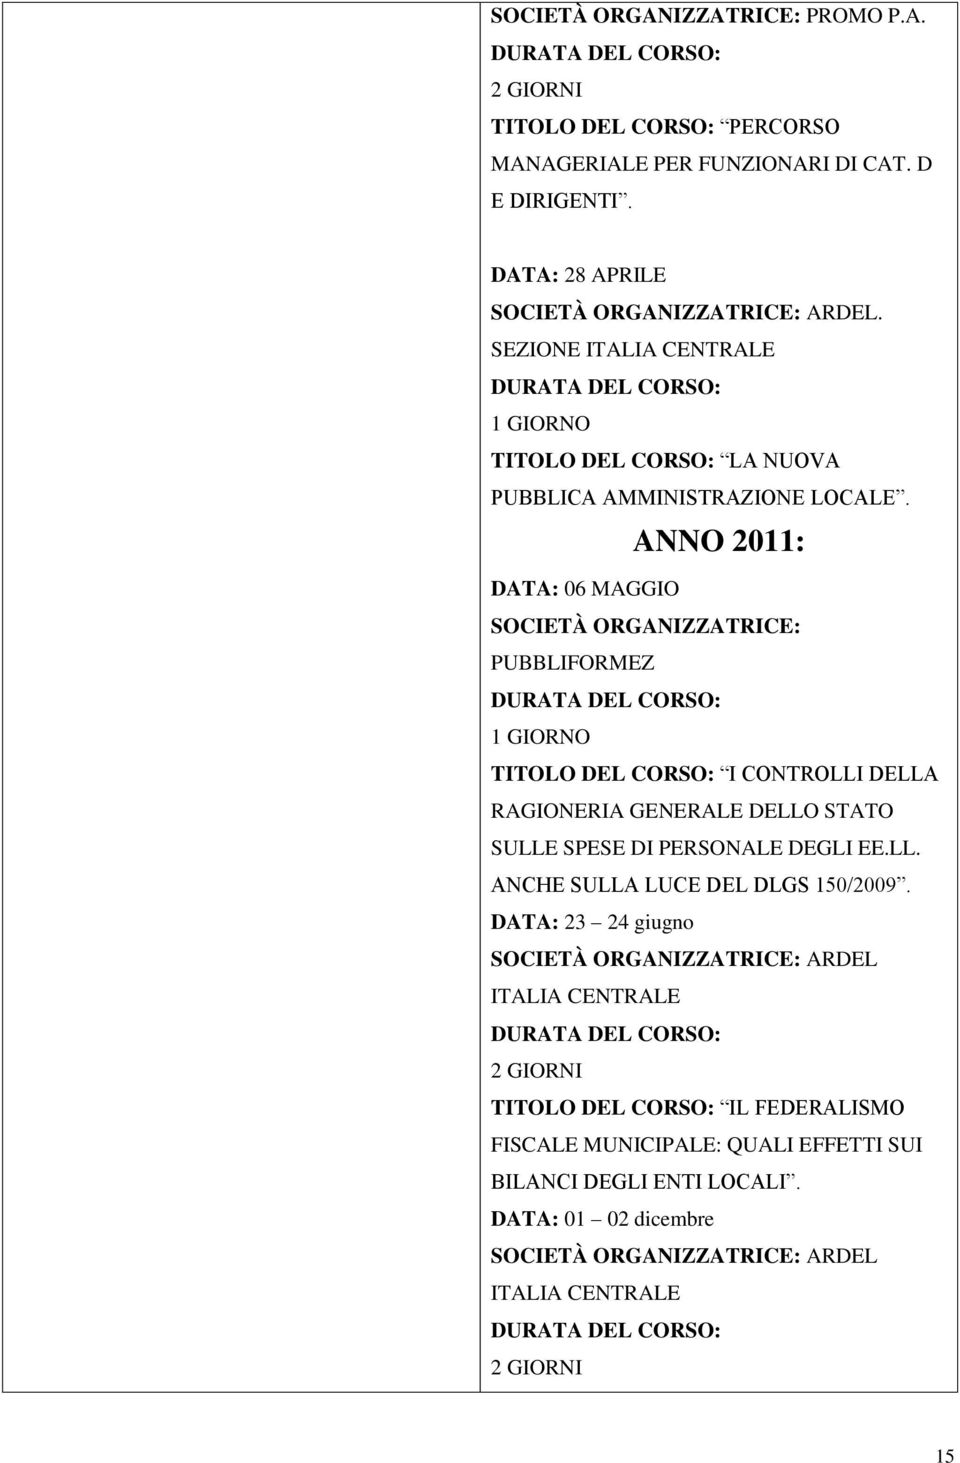 ANNO 2011: DATA: 06 MAGGIO SOCIETÀ ORGANIZZATRICE: PUBBLIFORMEZ TITOLO DEL CORSO: I CONTROLLI DELLA RAGIONERIA GENERALE DELLO STATO SULLE SPESE DI PERSONALE DEGLI EE.LL. ANCHE SULLA LUCE DEL DLGS 150/2009.